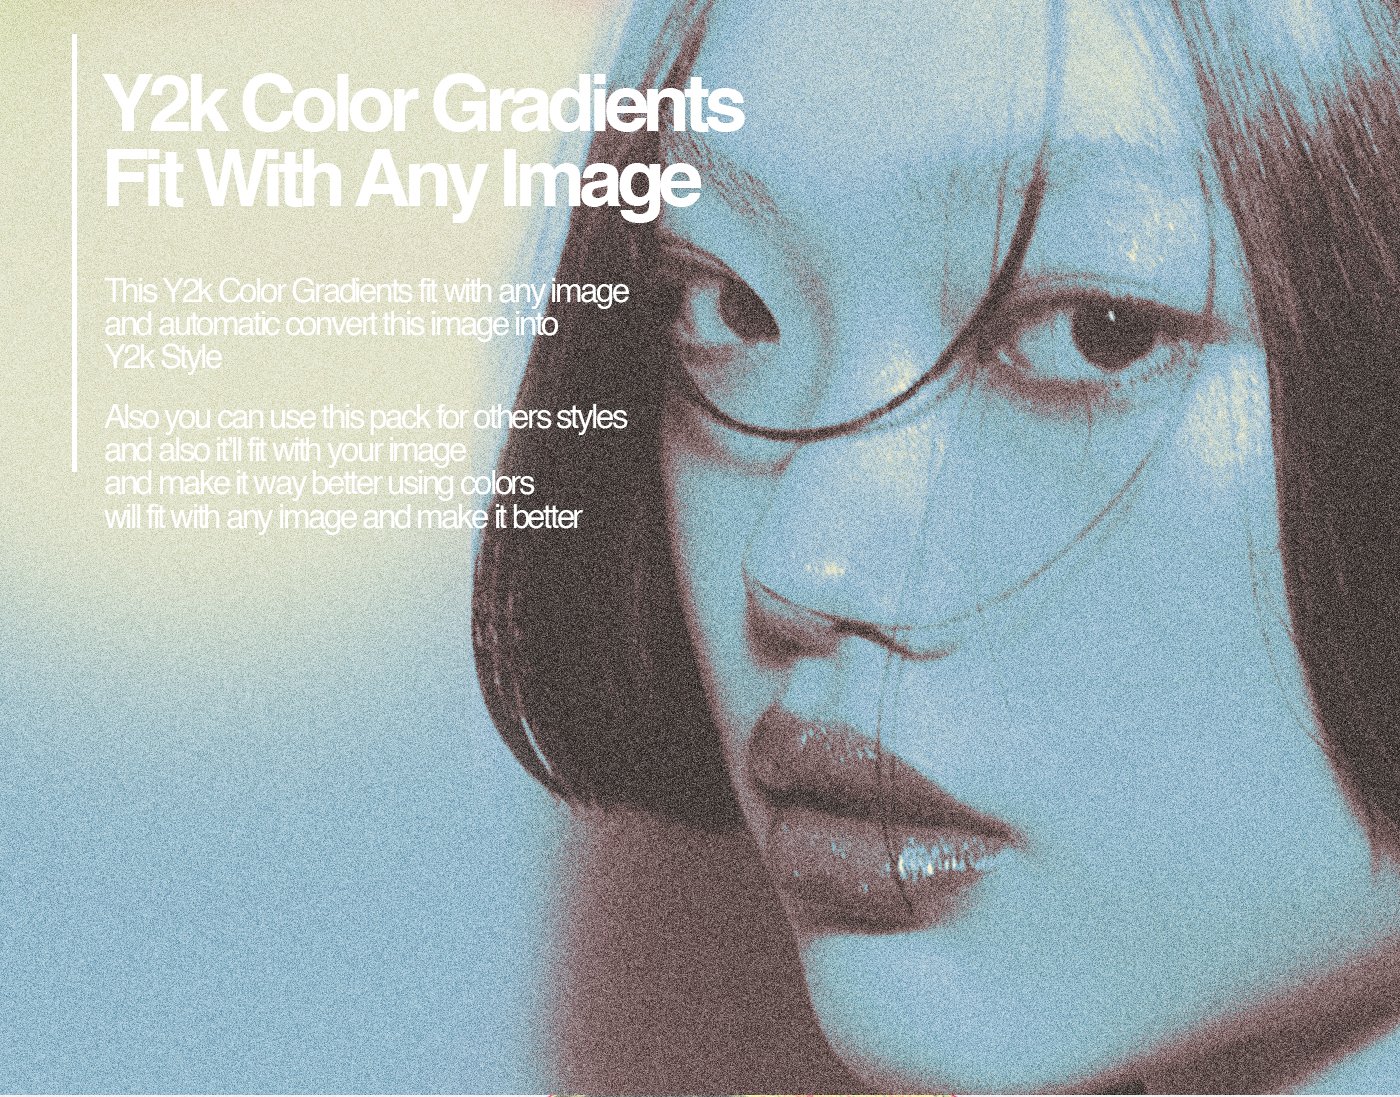 潮流创意炫彩渐变映射照片一键式修图调色PS色板预设设计素材 +120 Y2k Color Gradients（9232）图层云